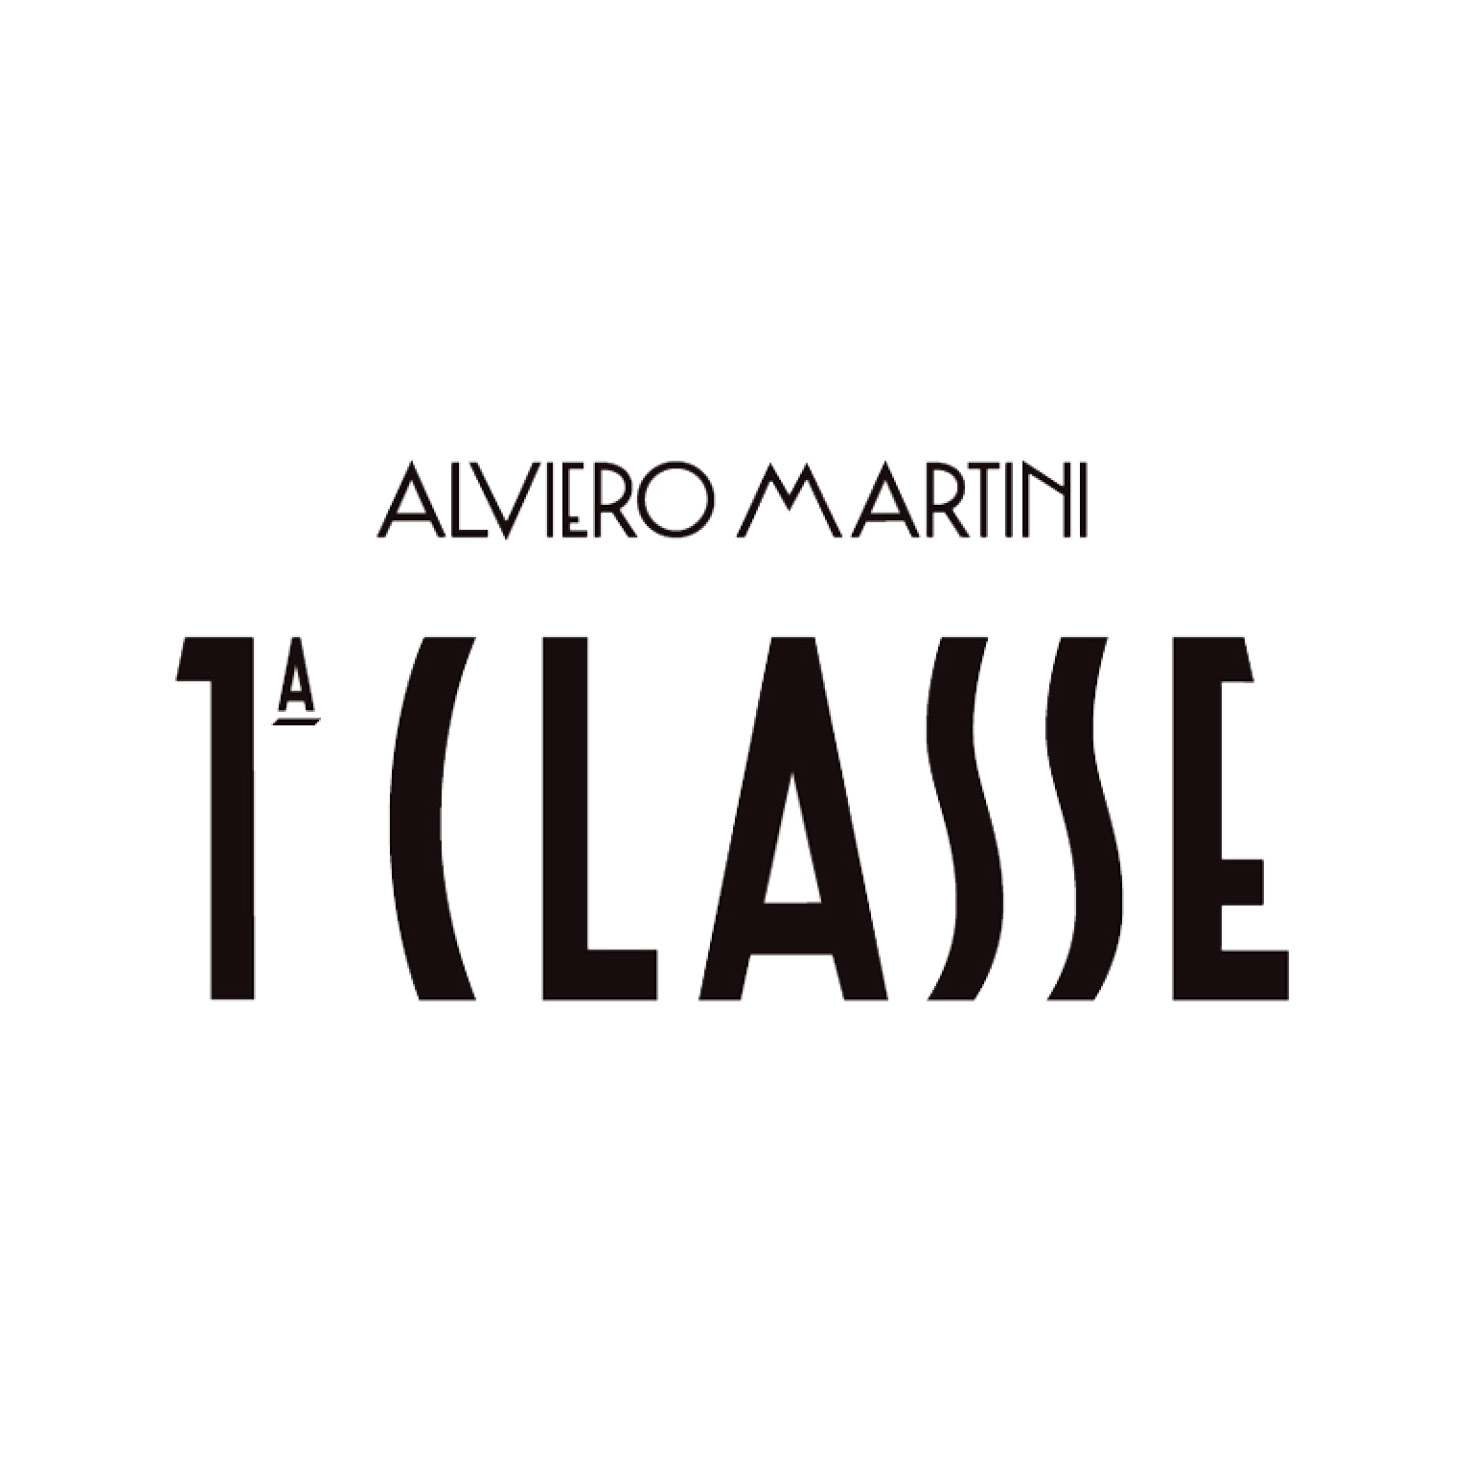 Alviero martini License Mosaique